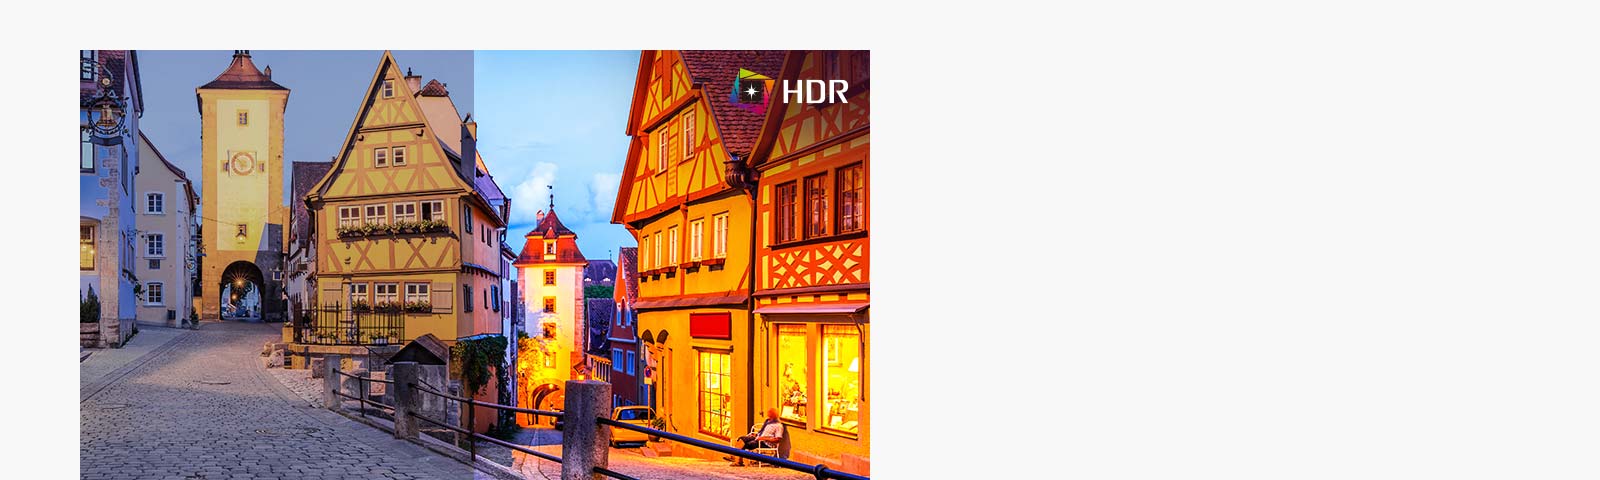 Giờ đây công nghệ HDR đang được ứng dụng vào nhiều nội dung khác nhau. Màn hình này tương thích với HDR10 (dải động cao), hỗ trợ các mức độ màu sắc và độ sáng cụ thể, cho phép người xem thưởng thức màu sắc ấn tượng của nội dung.